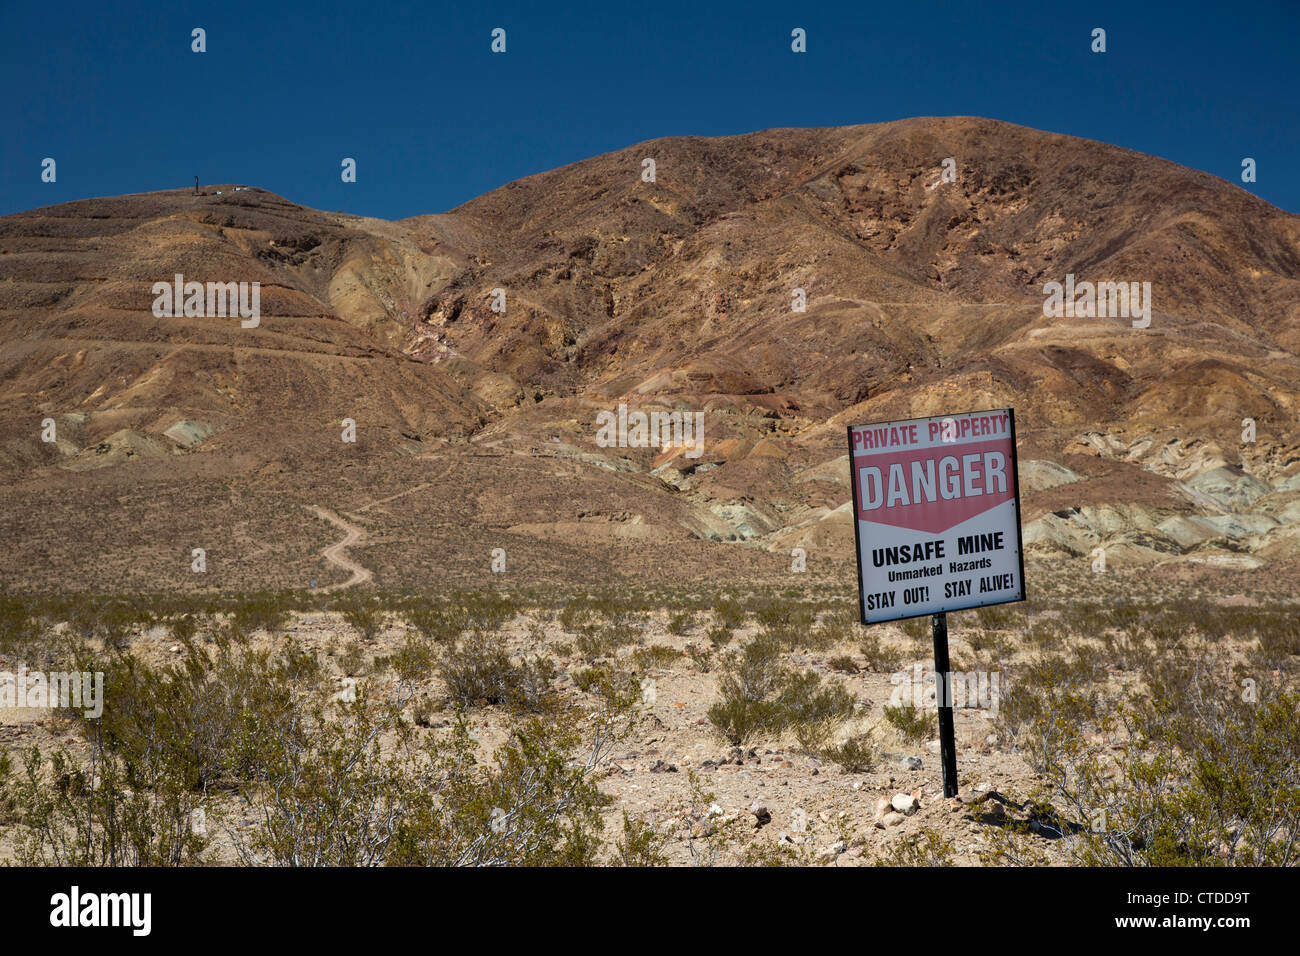 Barstow, California - Un segno avverte i visitatori di stare lontano dalle miniere non sicuri nel deserto di Mojave. Foto Stock